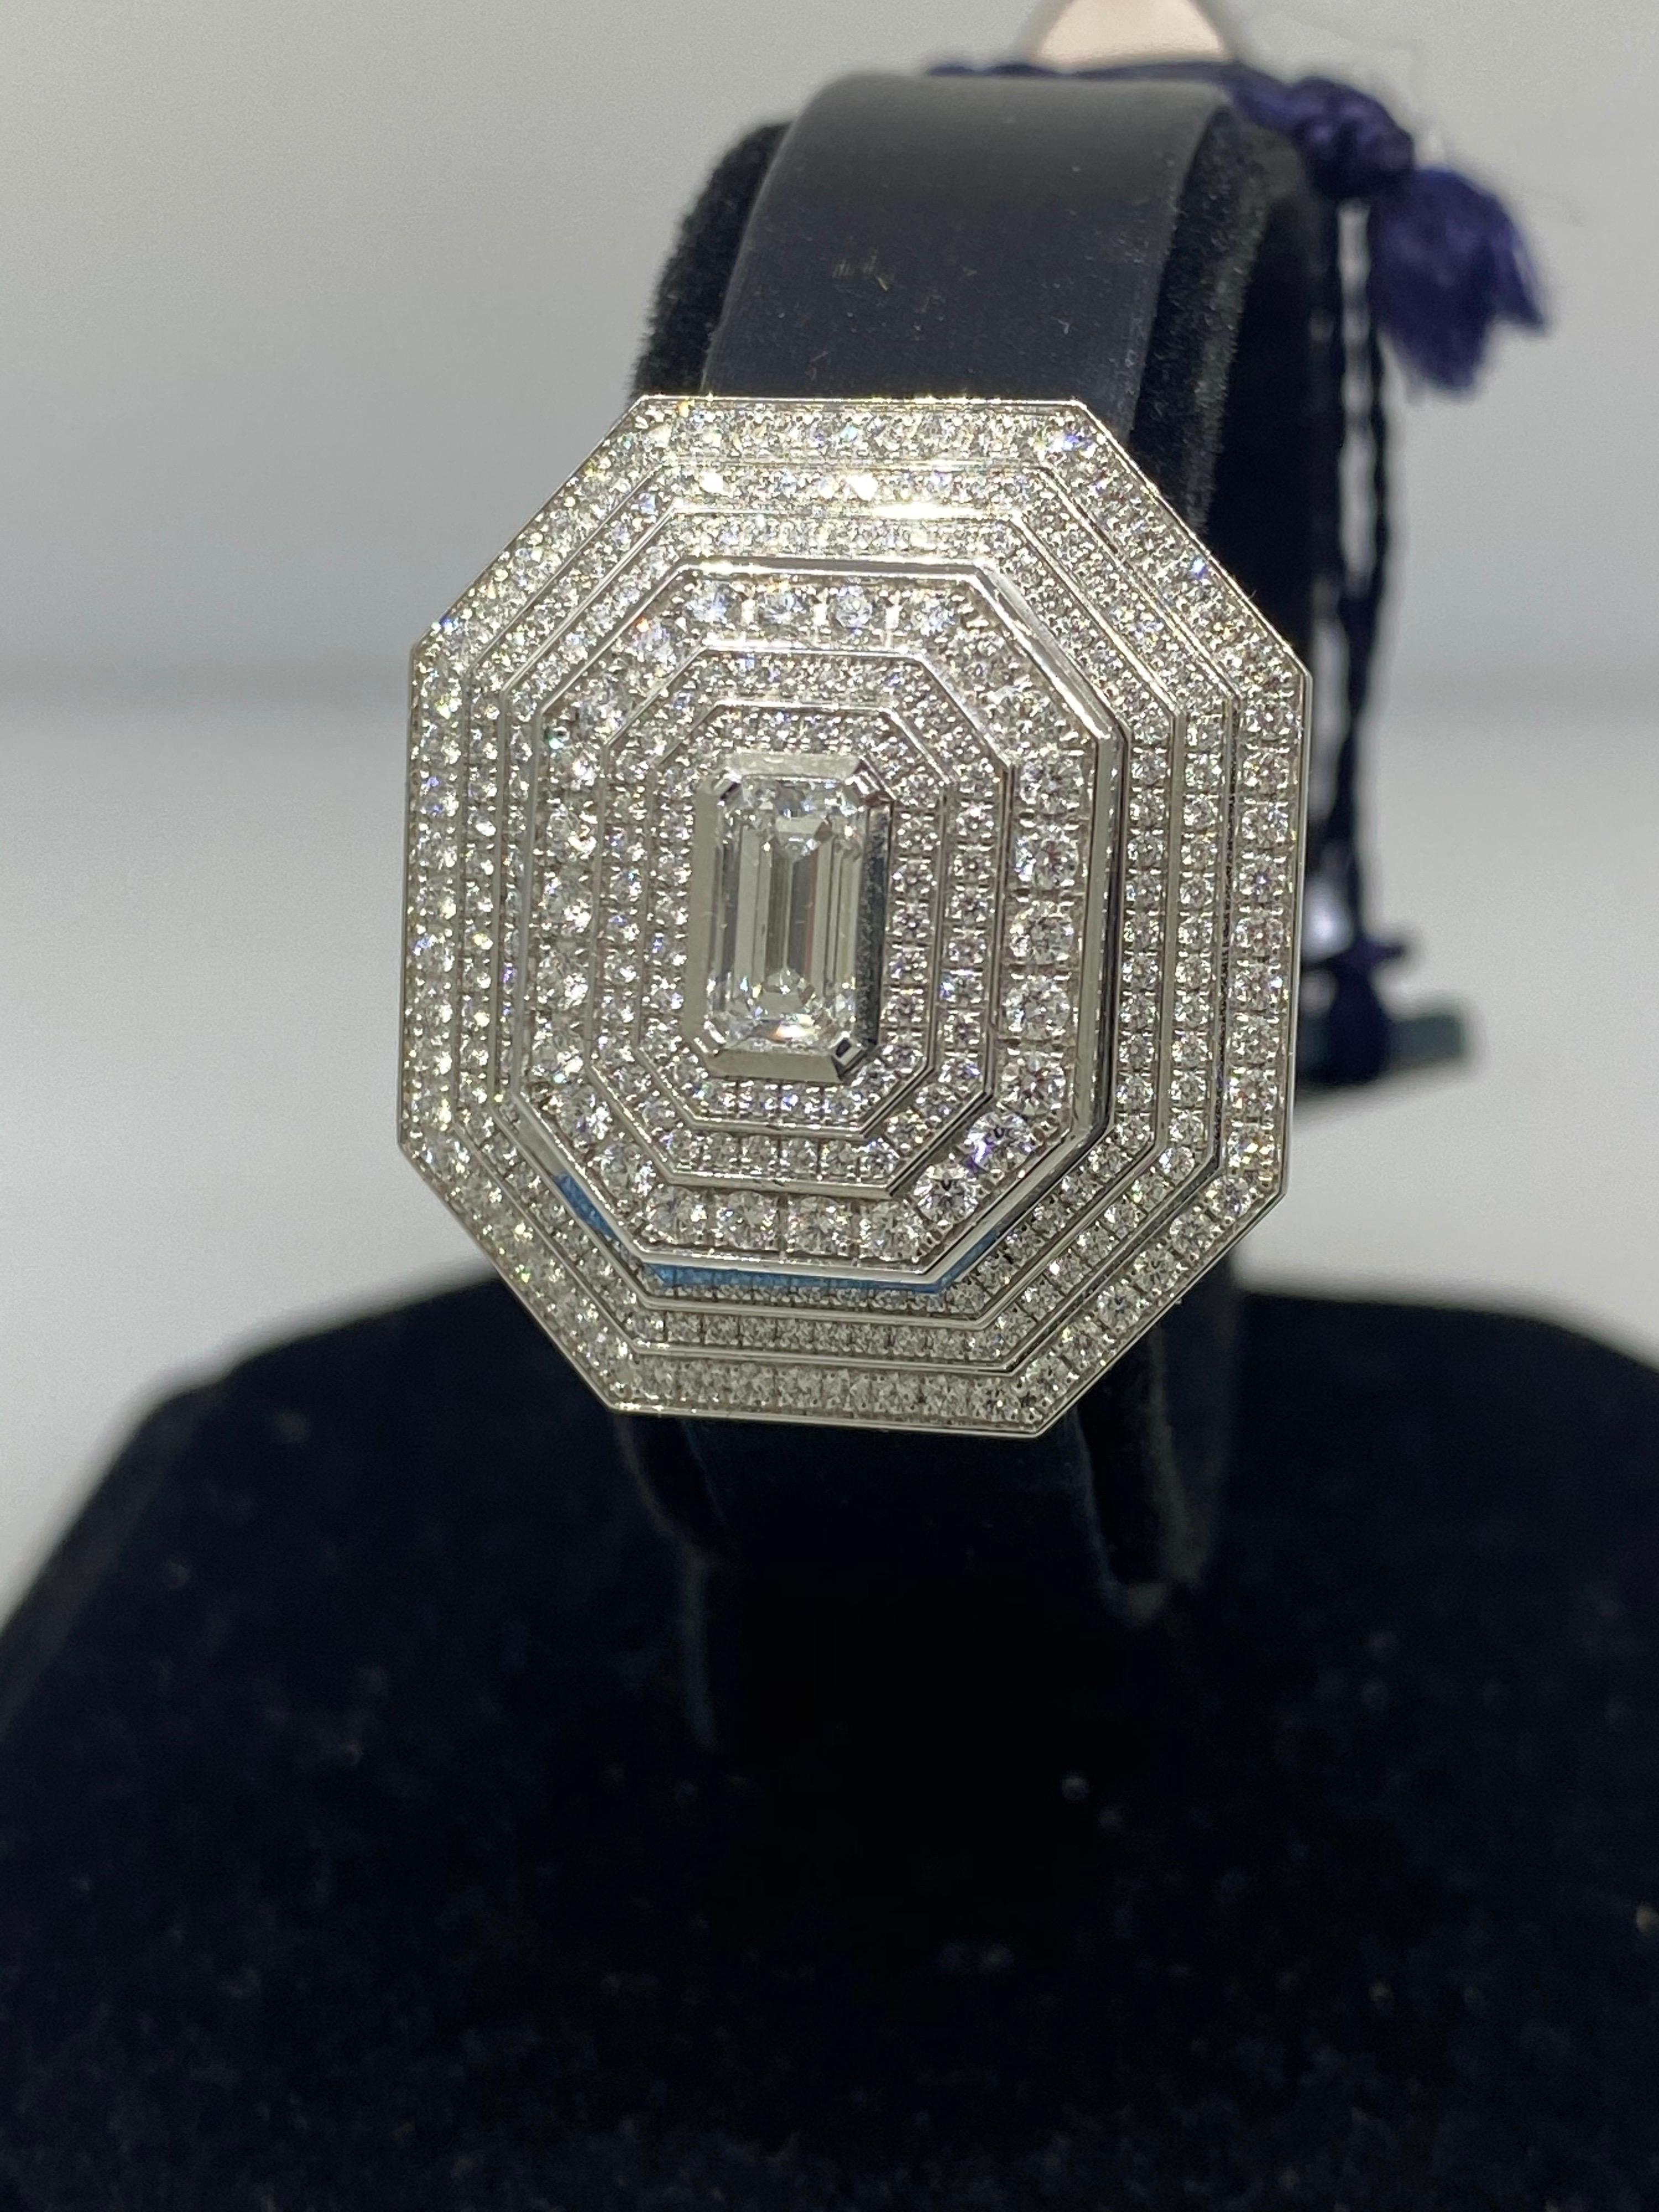 harry winston diamond watch price